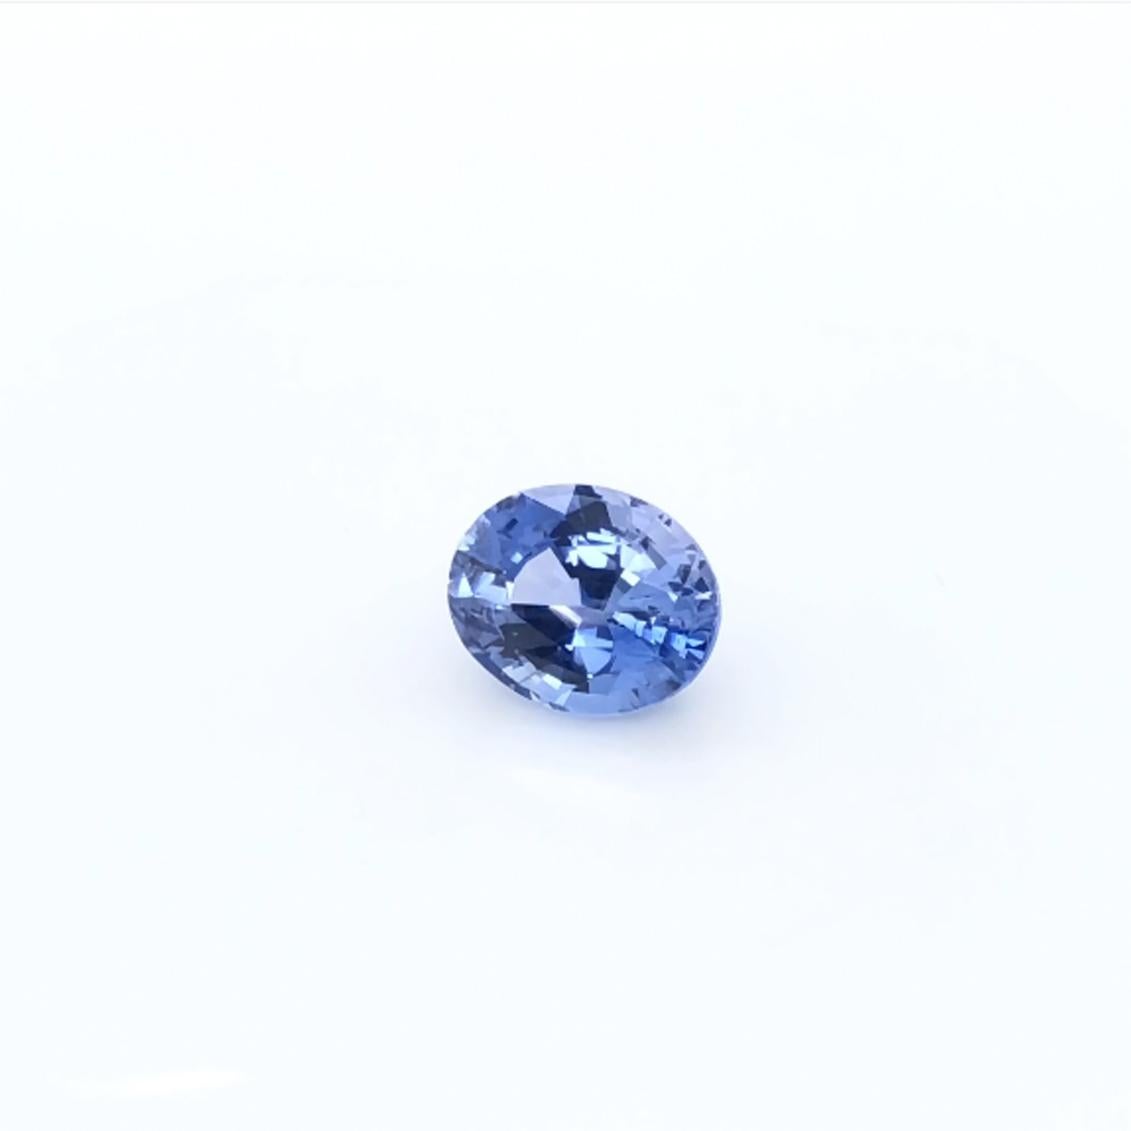 Karat: 4,23 
Artikel: Blauer Saphir 
Art: Natürlich 
Die Form: Oval 
Herkunft: Sri Lanka 
Farbe: Blau
Größe: 10.32X8.28X6.07
Zertifikat: BELL-R-202033153, GIA2019-2314959729/6

Begeben Sie sich auf eine Reise von unvergleichlicher Eleganz mit